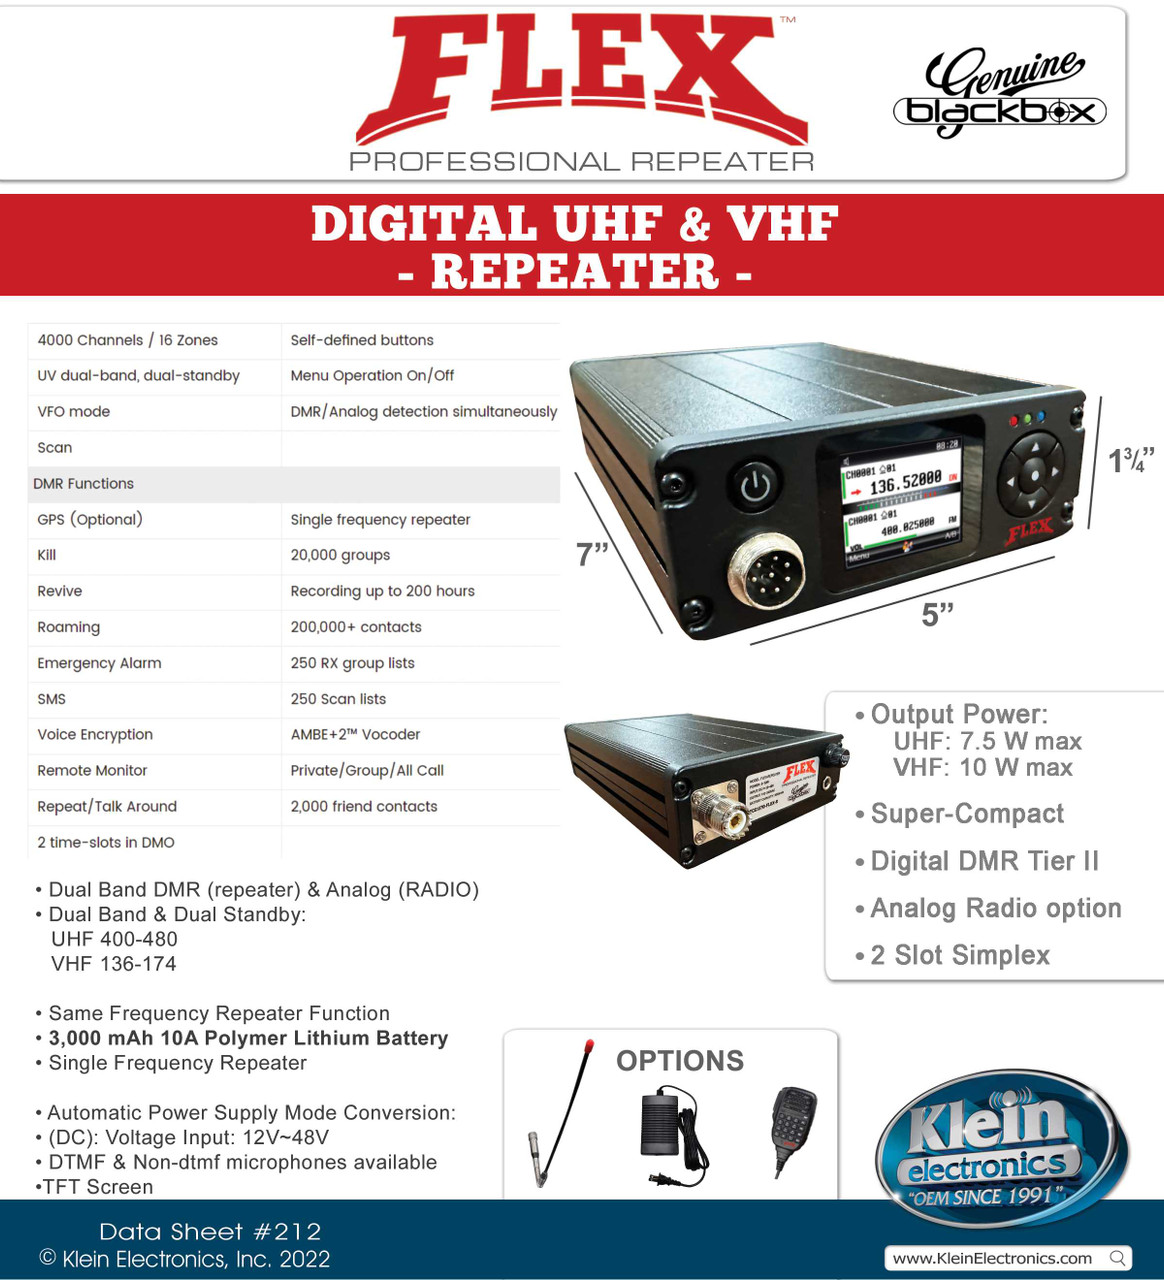 FLEX Professional Repeater